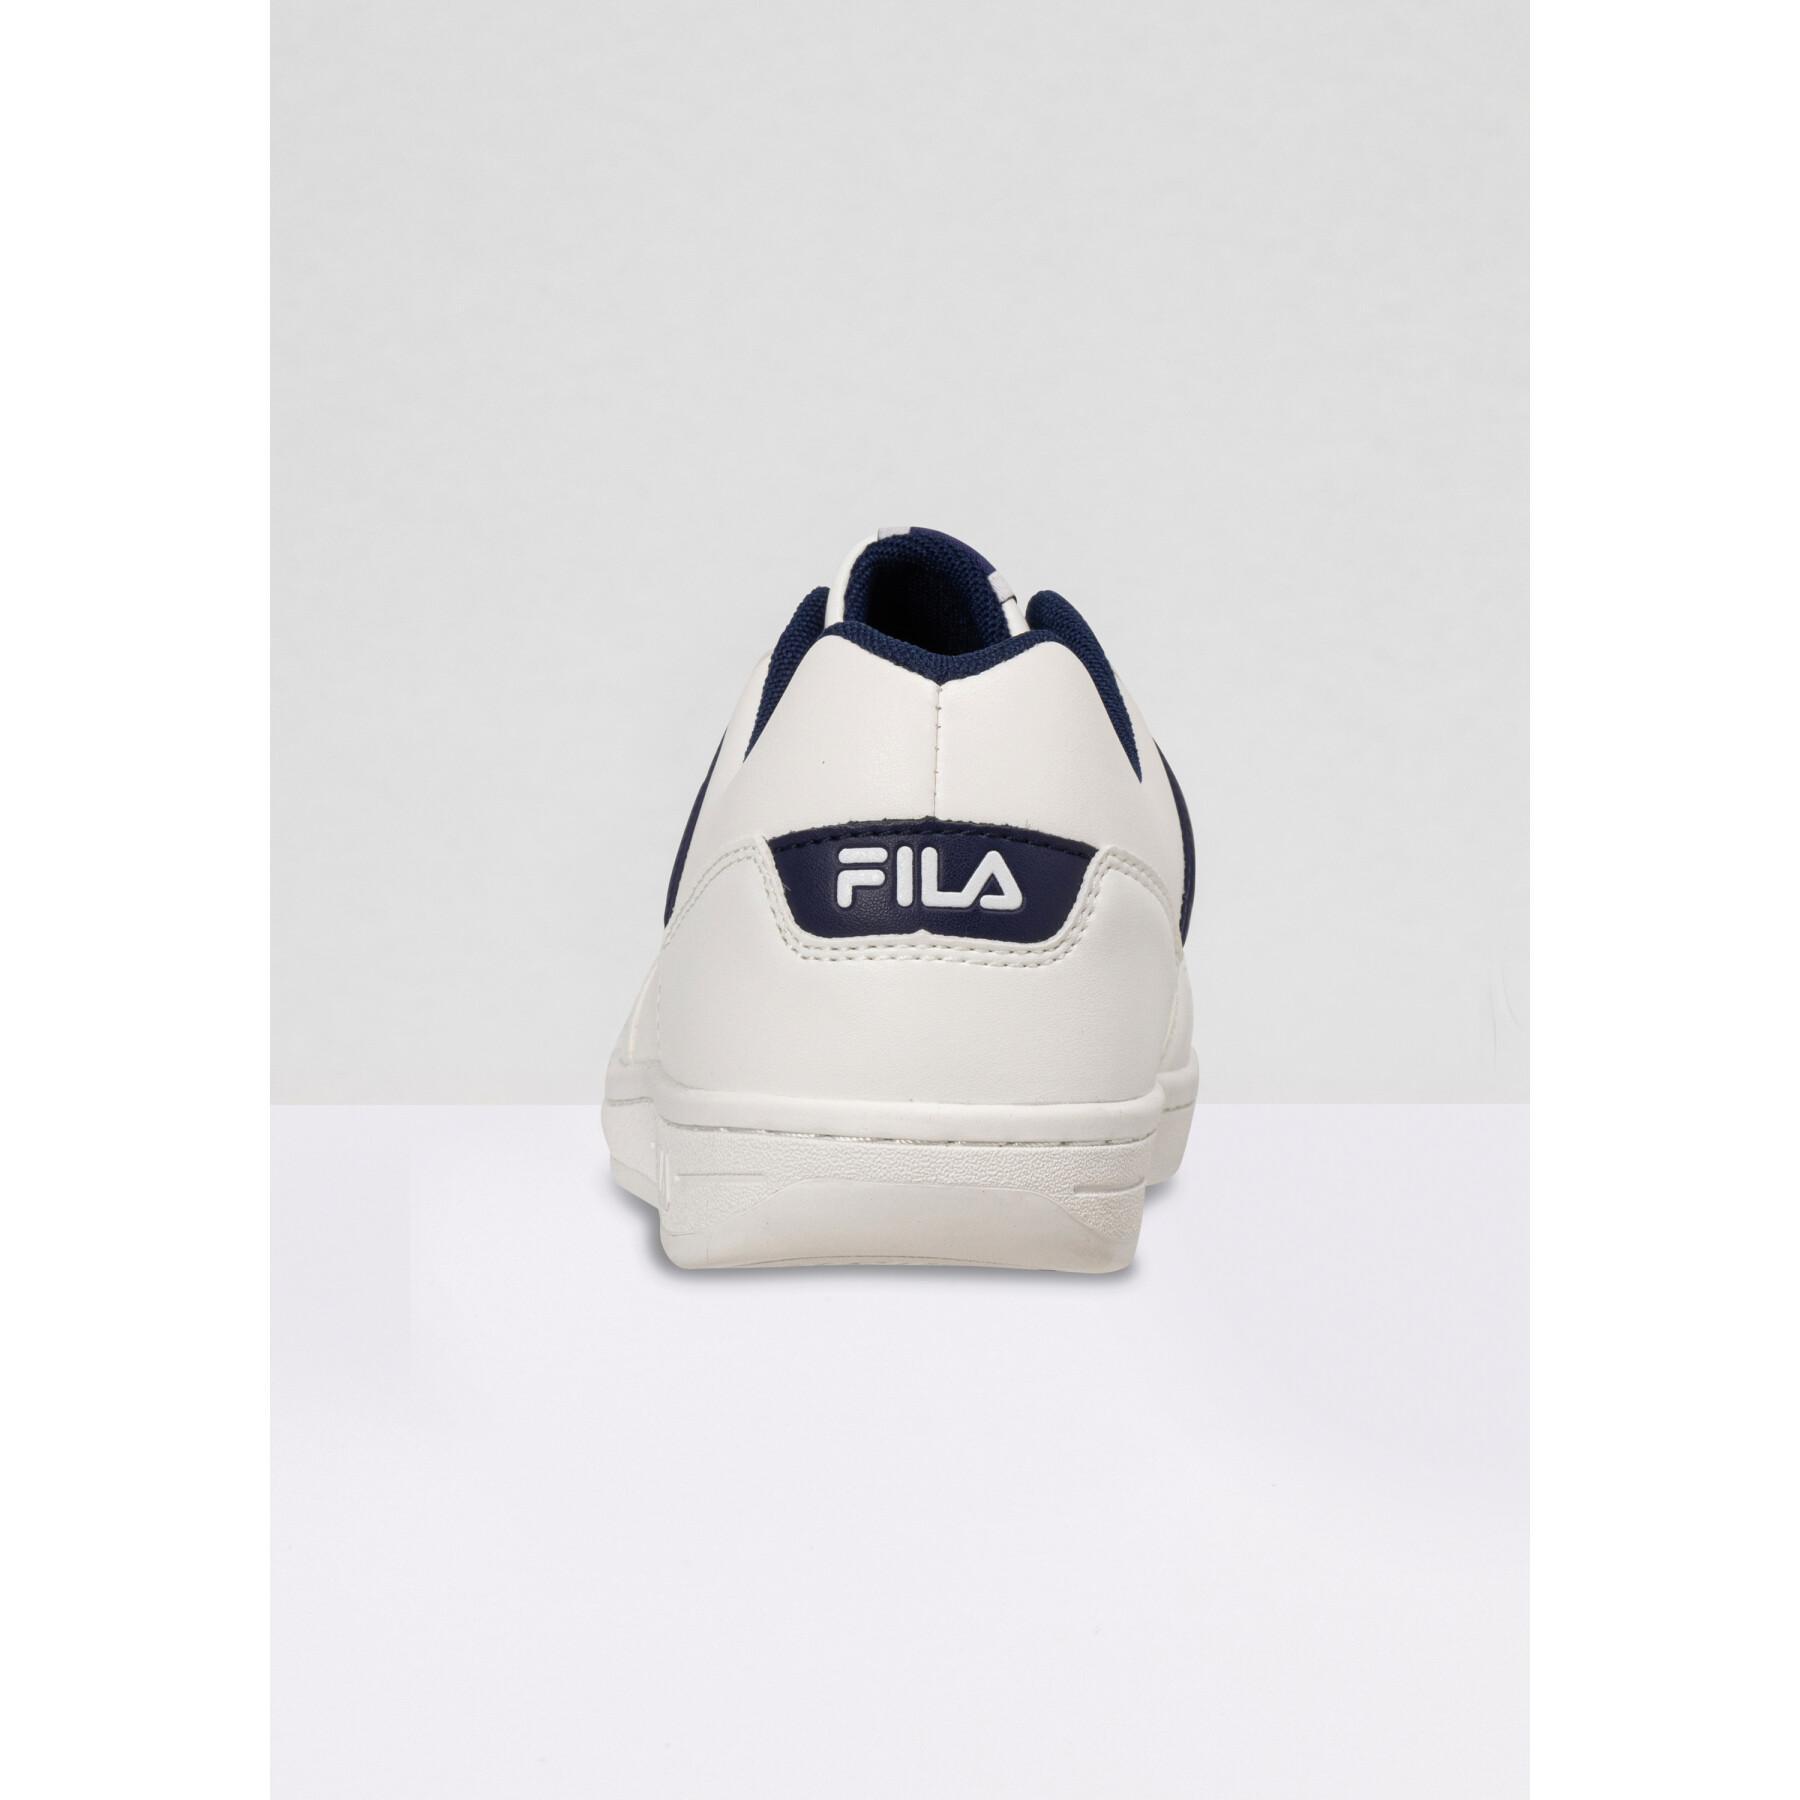 Children's sneakers Fila C.Court